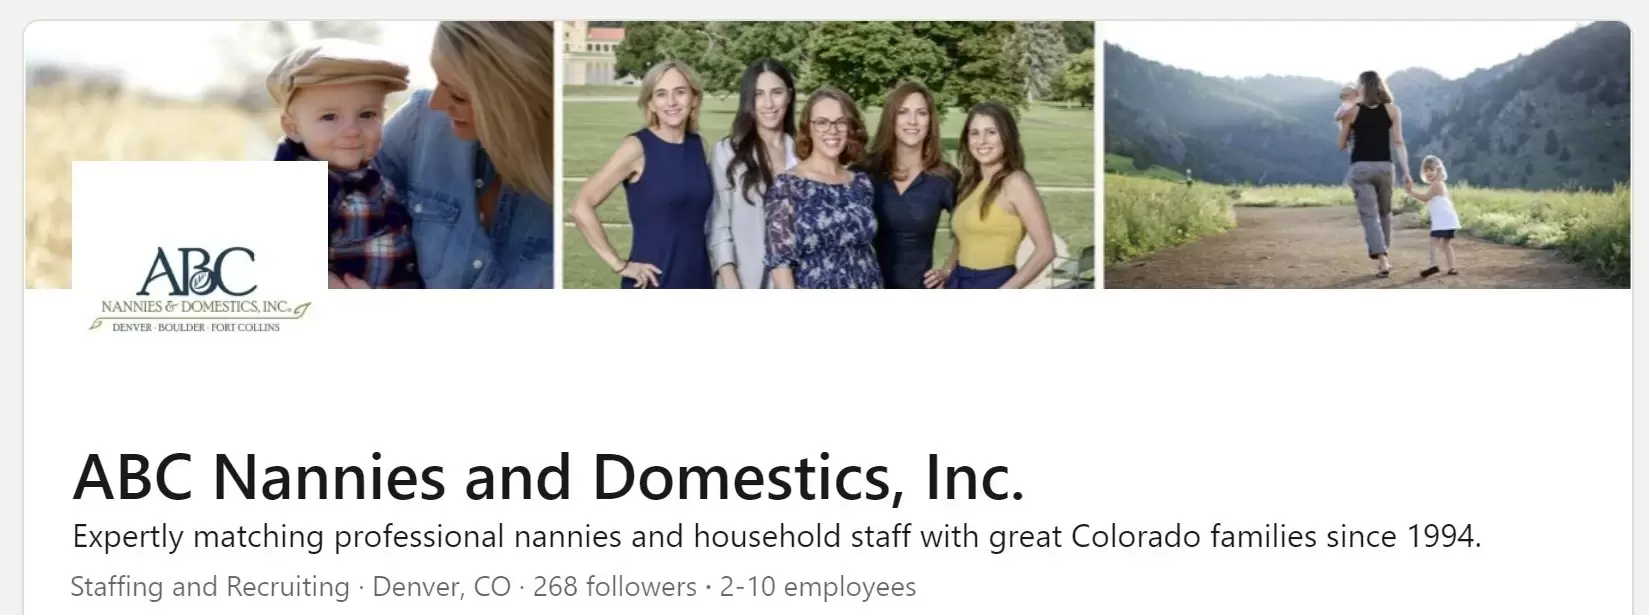 ABC Nannies & Domestics Inc on LinkedIn